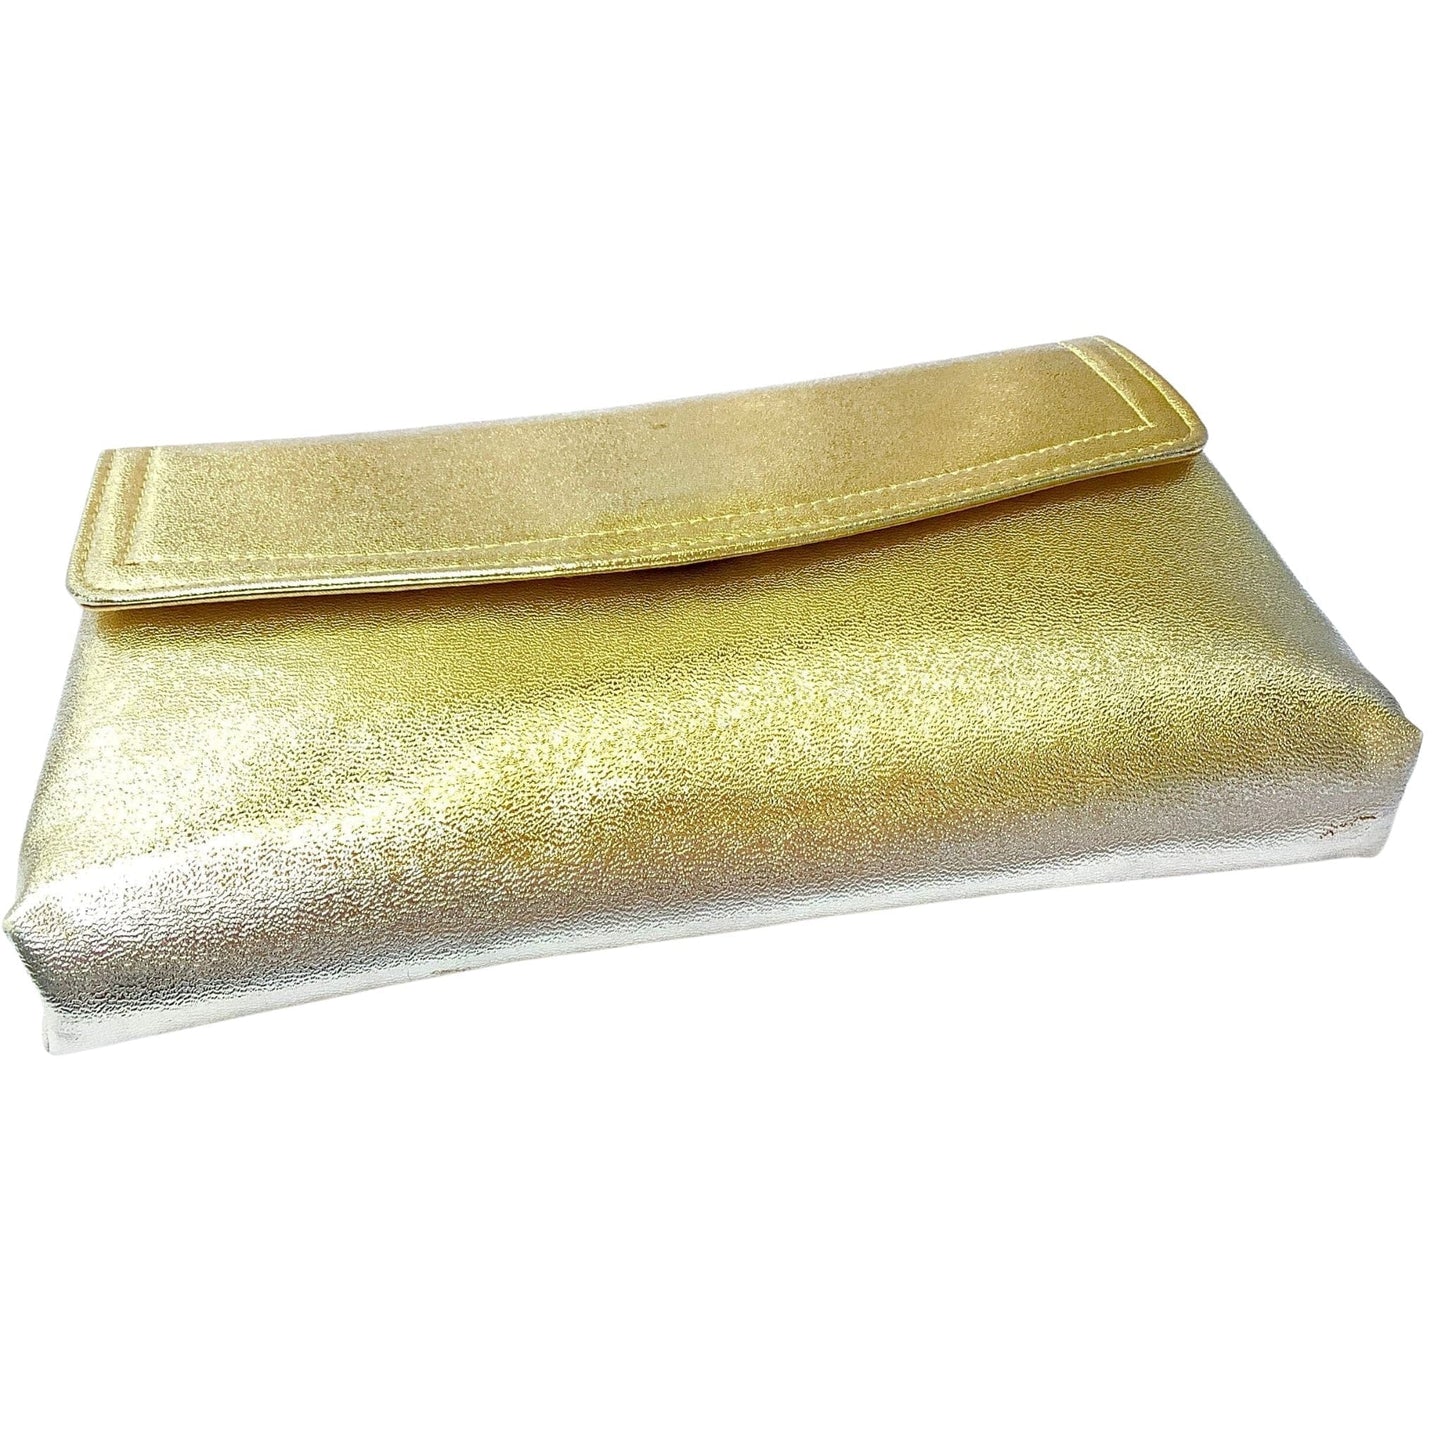 Vintage Gold Handbag Gold / Man Made / Vintage 1980s